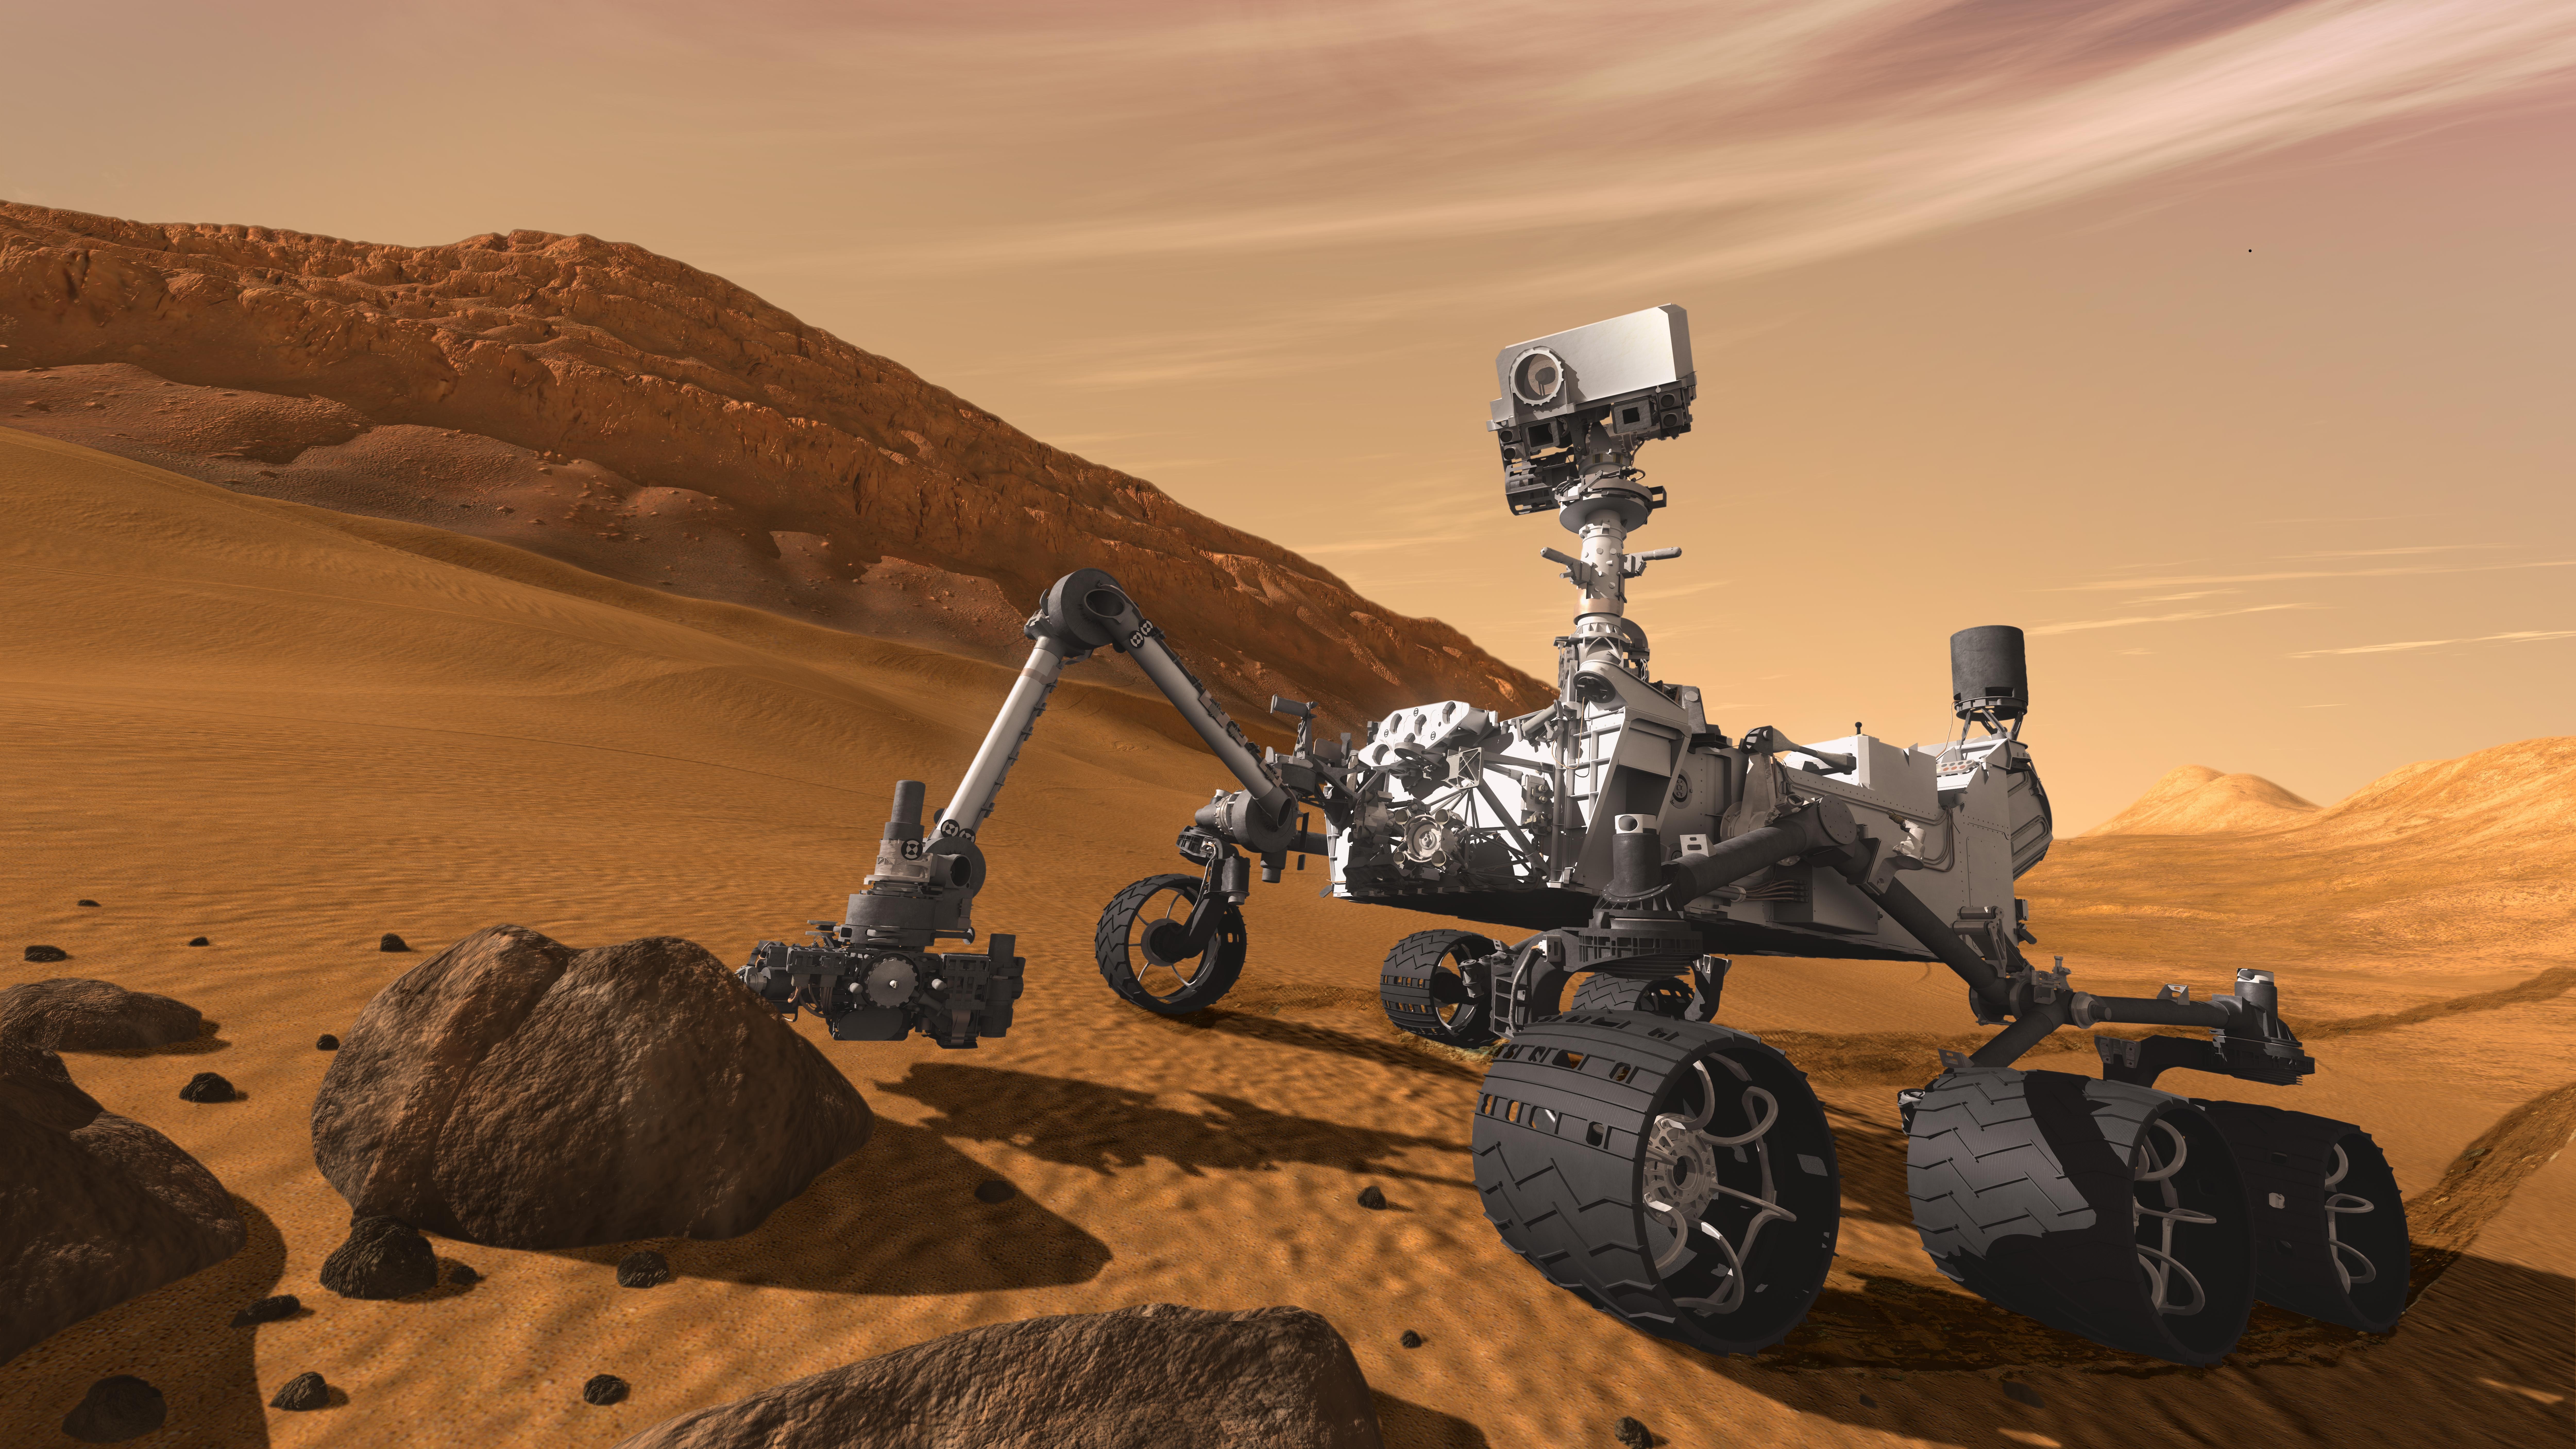 The Curiosity Rover | Cars | Pinterest | Curiosity mars and ...